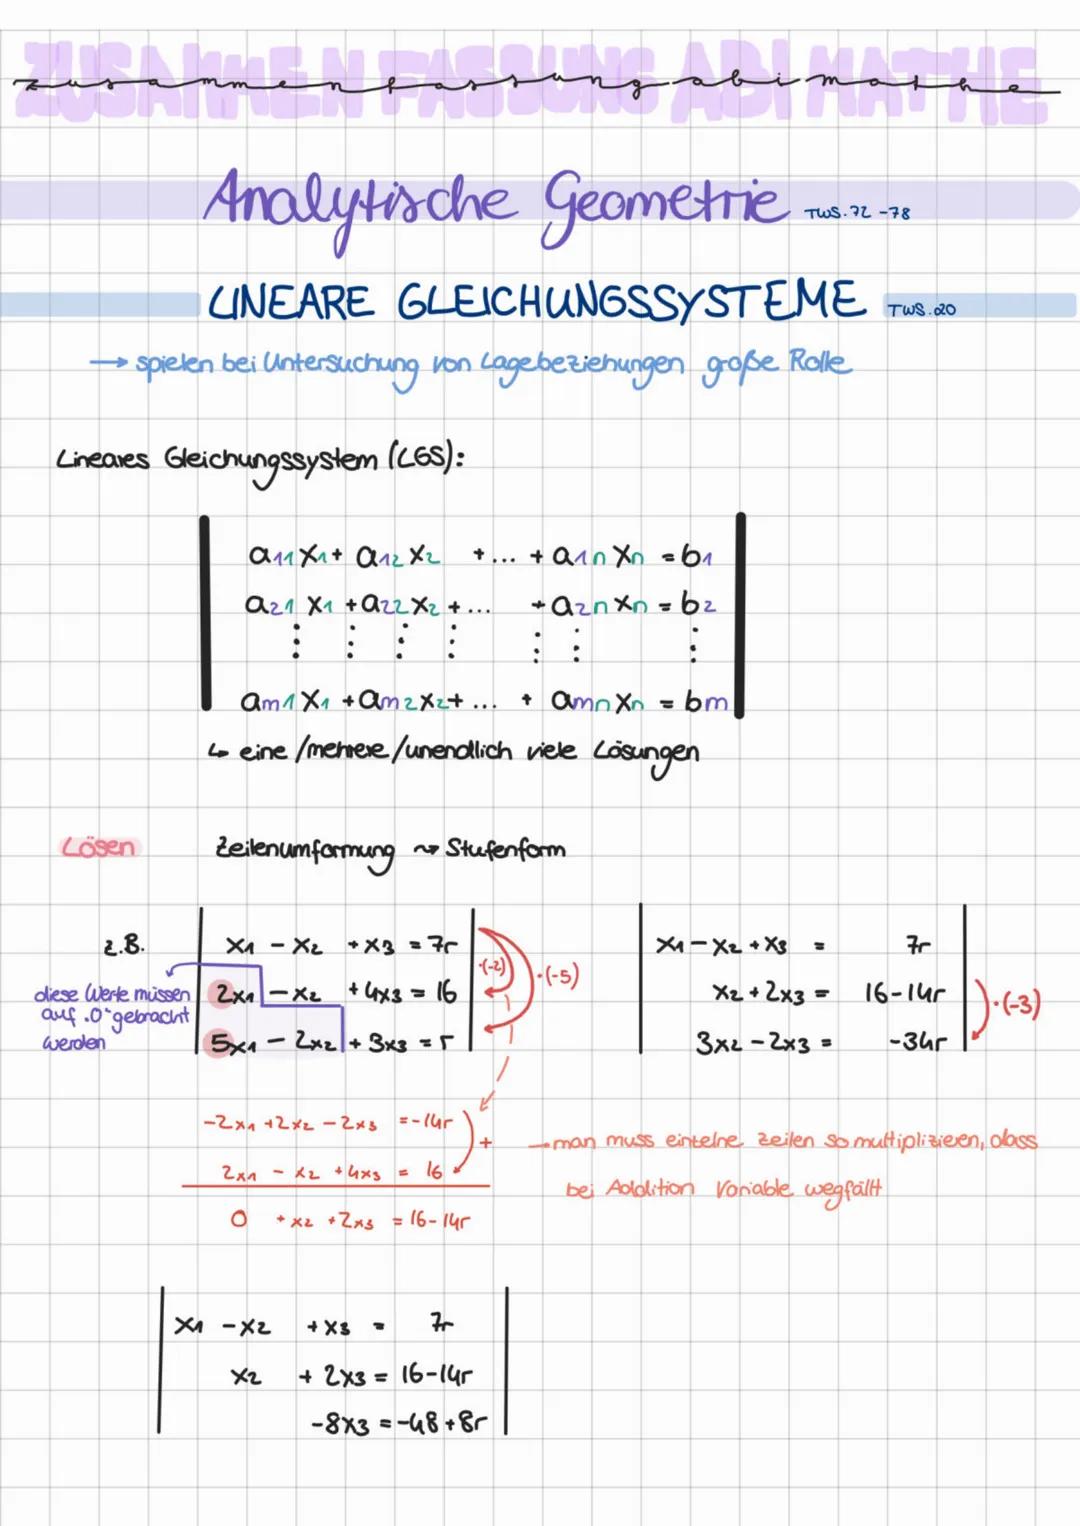 zuramen
LINEARE GLEICHUNGSSYSTEME
→ spielen bei Untersuchung von Lage beziehungen große Rolle
Lineales Gleichungssystem (LGS):
а11 Хла алг А